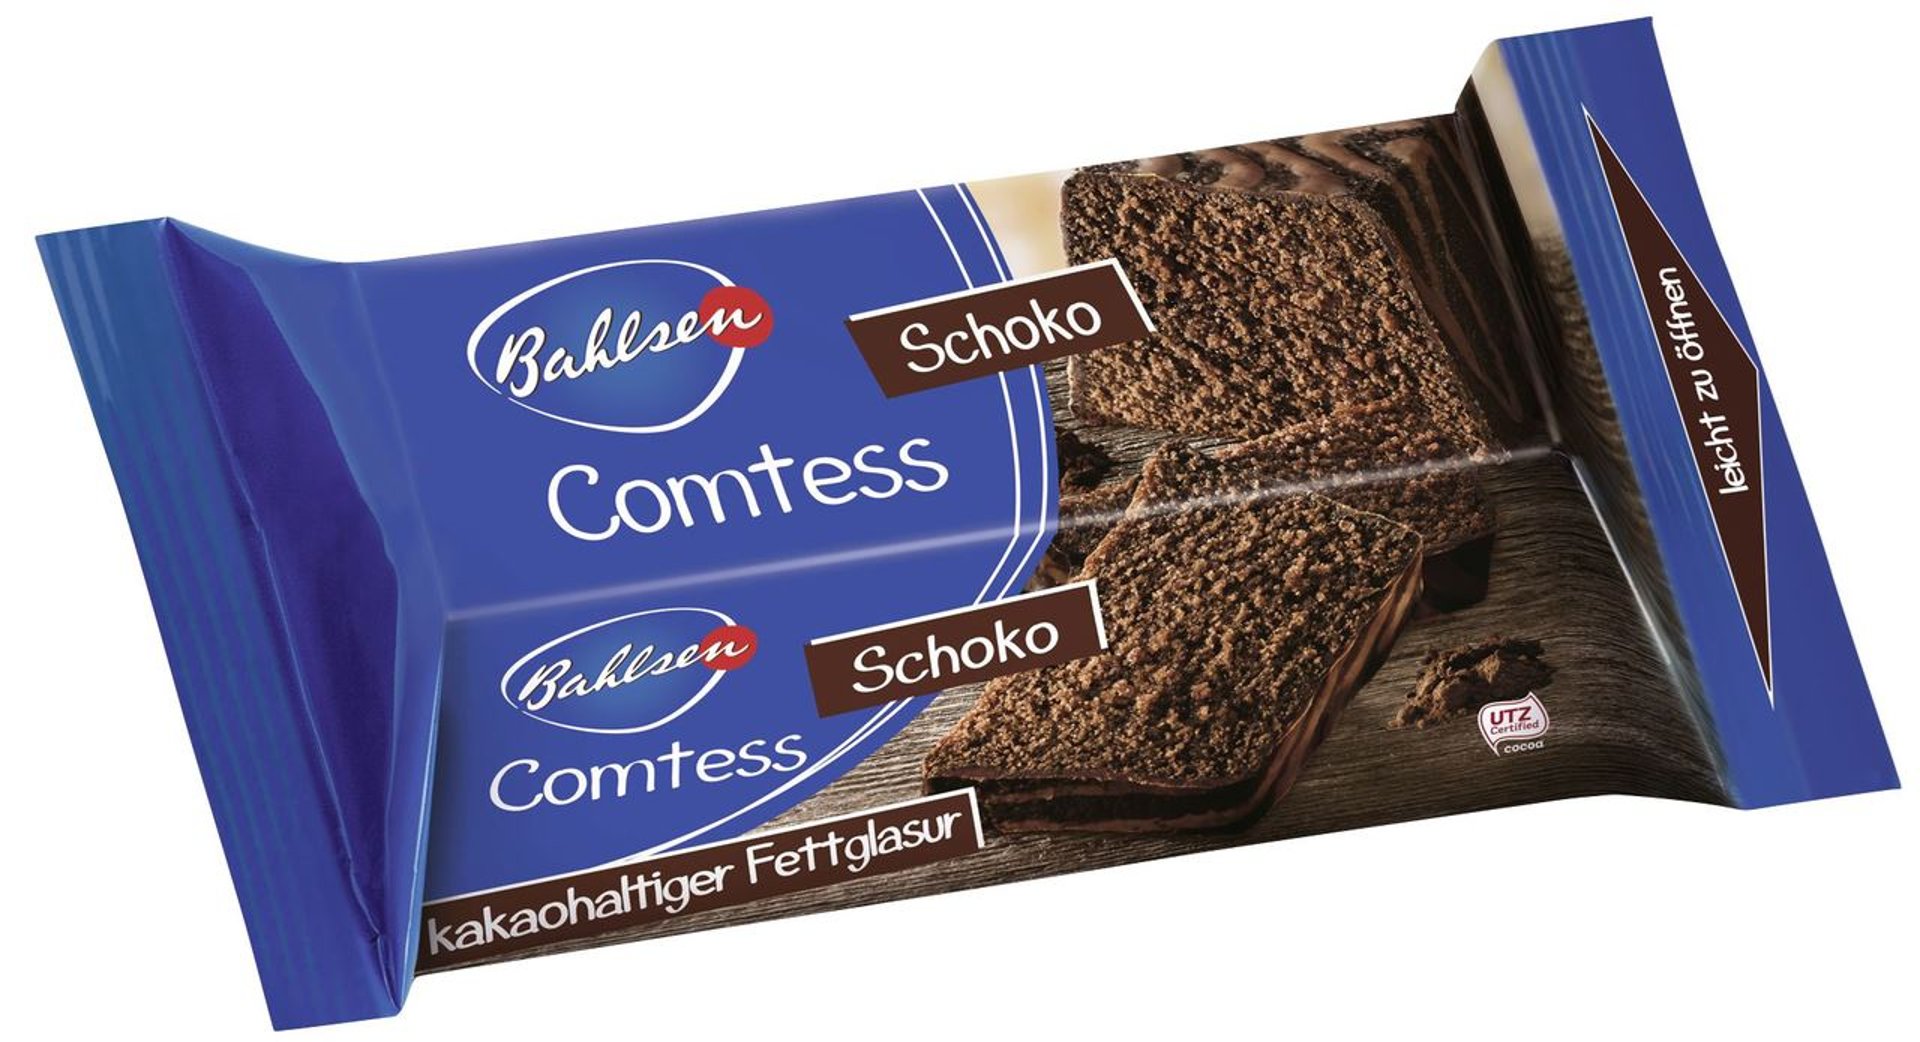 Bahlsen - Comtess Kuchen Schoko fertig gebacken ungeschnitten - 1 x 350 g